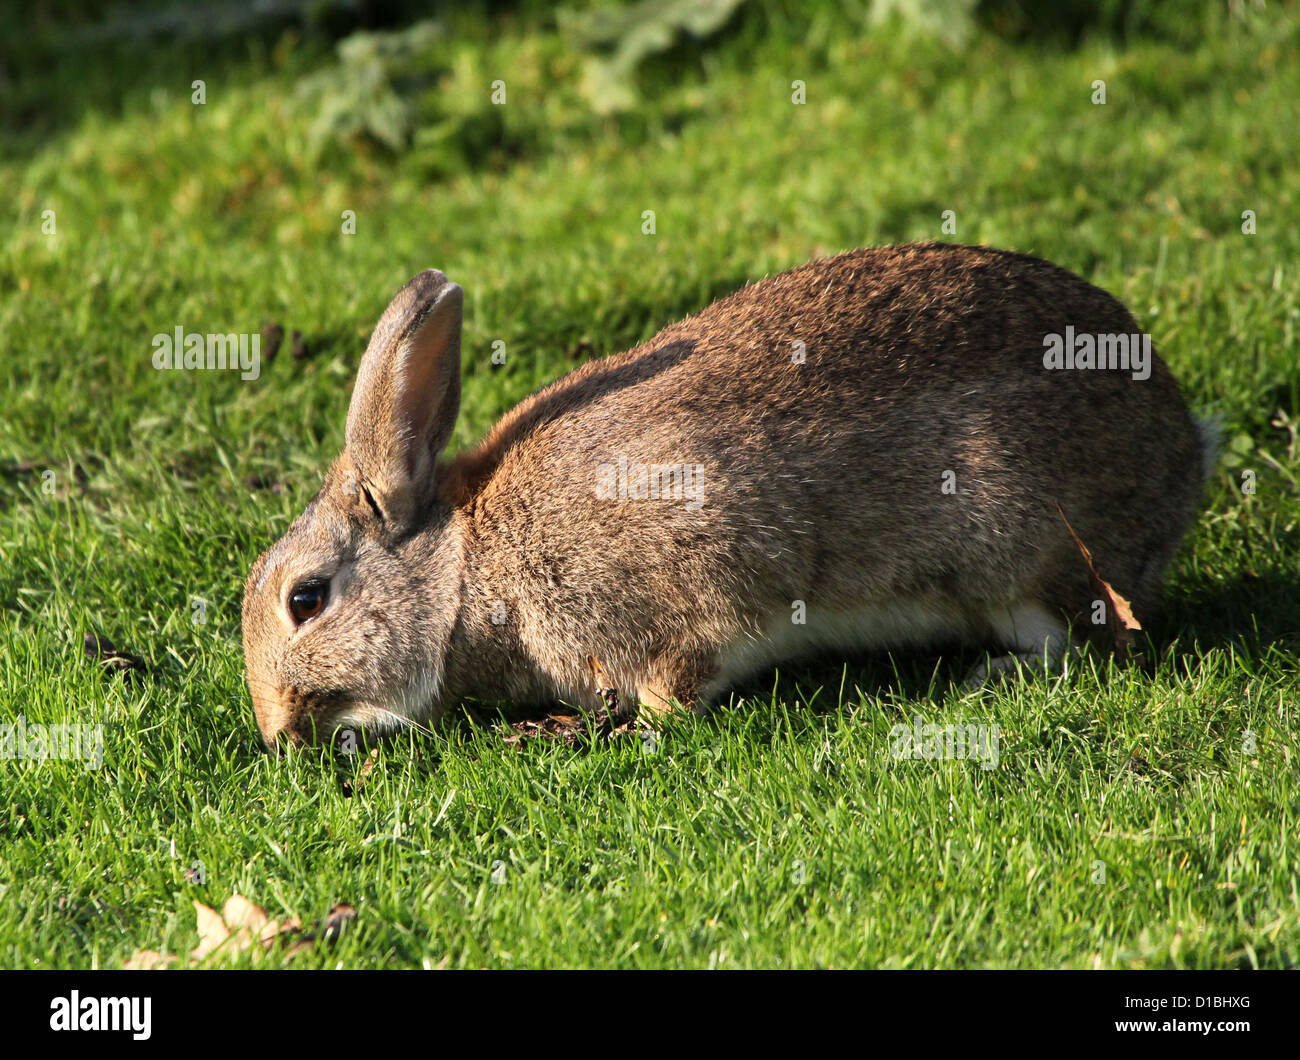 Portrait détaillé d'un lapin sauvage (Oryctolagus cuniculus) mange de l'herbe dans un pré Banque D'Images